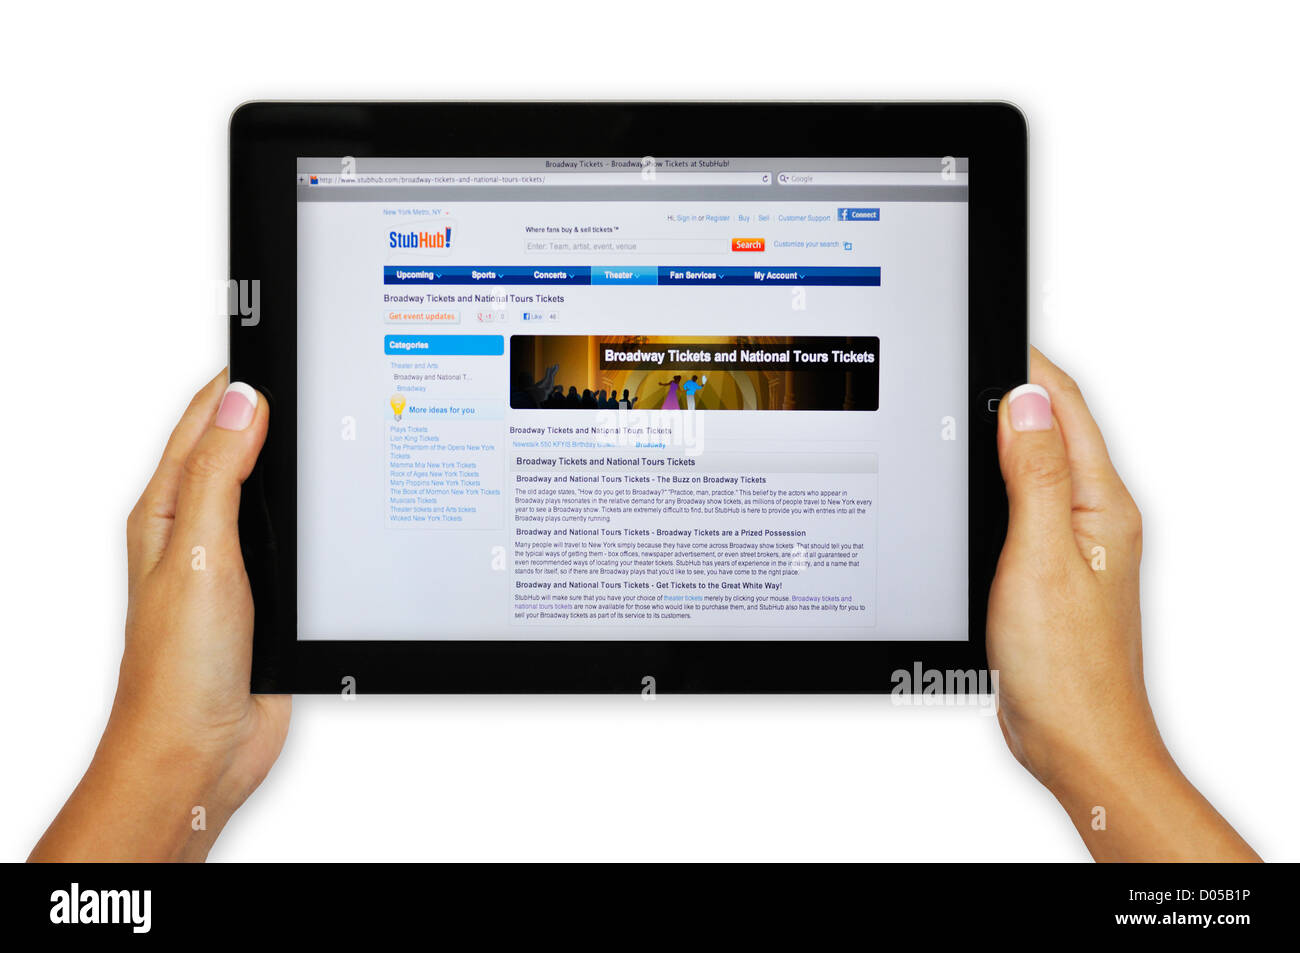 iPad-Bildschirm zeigt Website Stub Hub - online-Ticket-Marktplatz Stockfoto